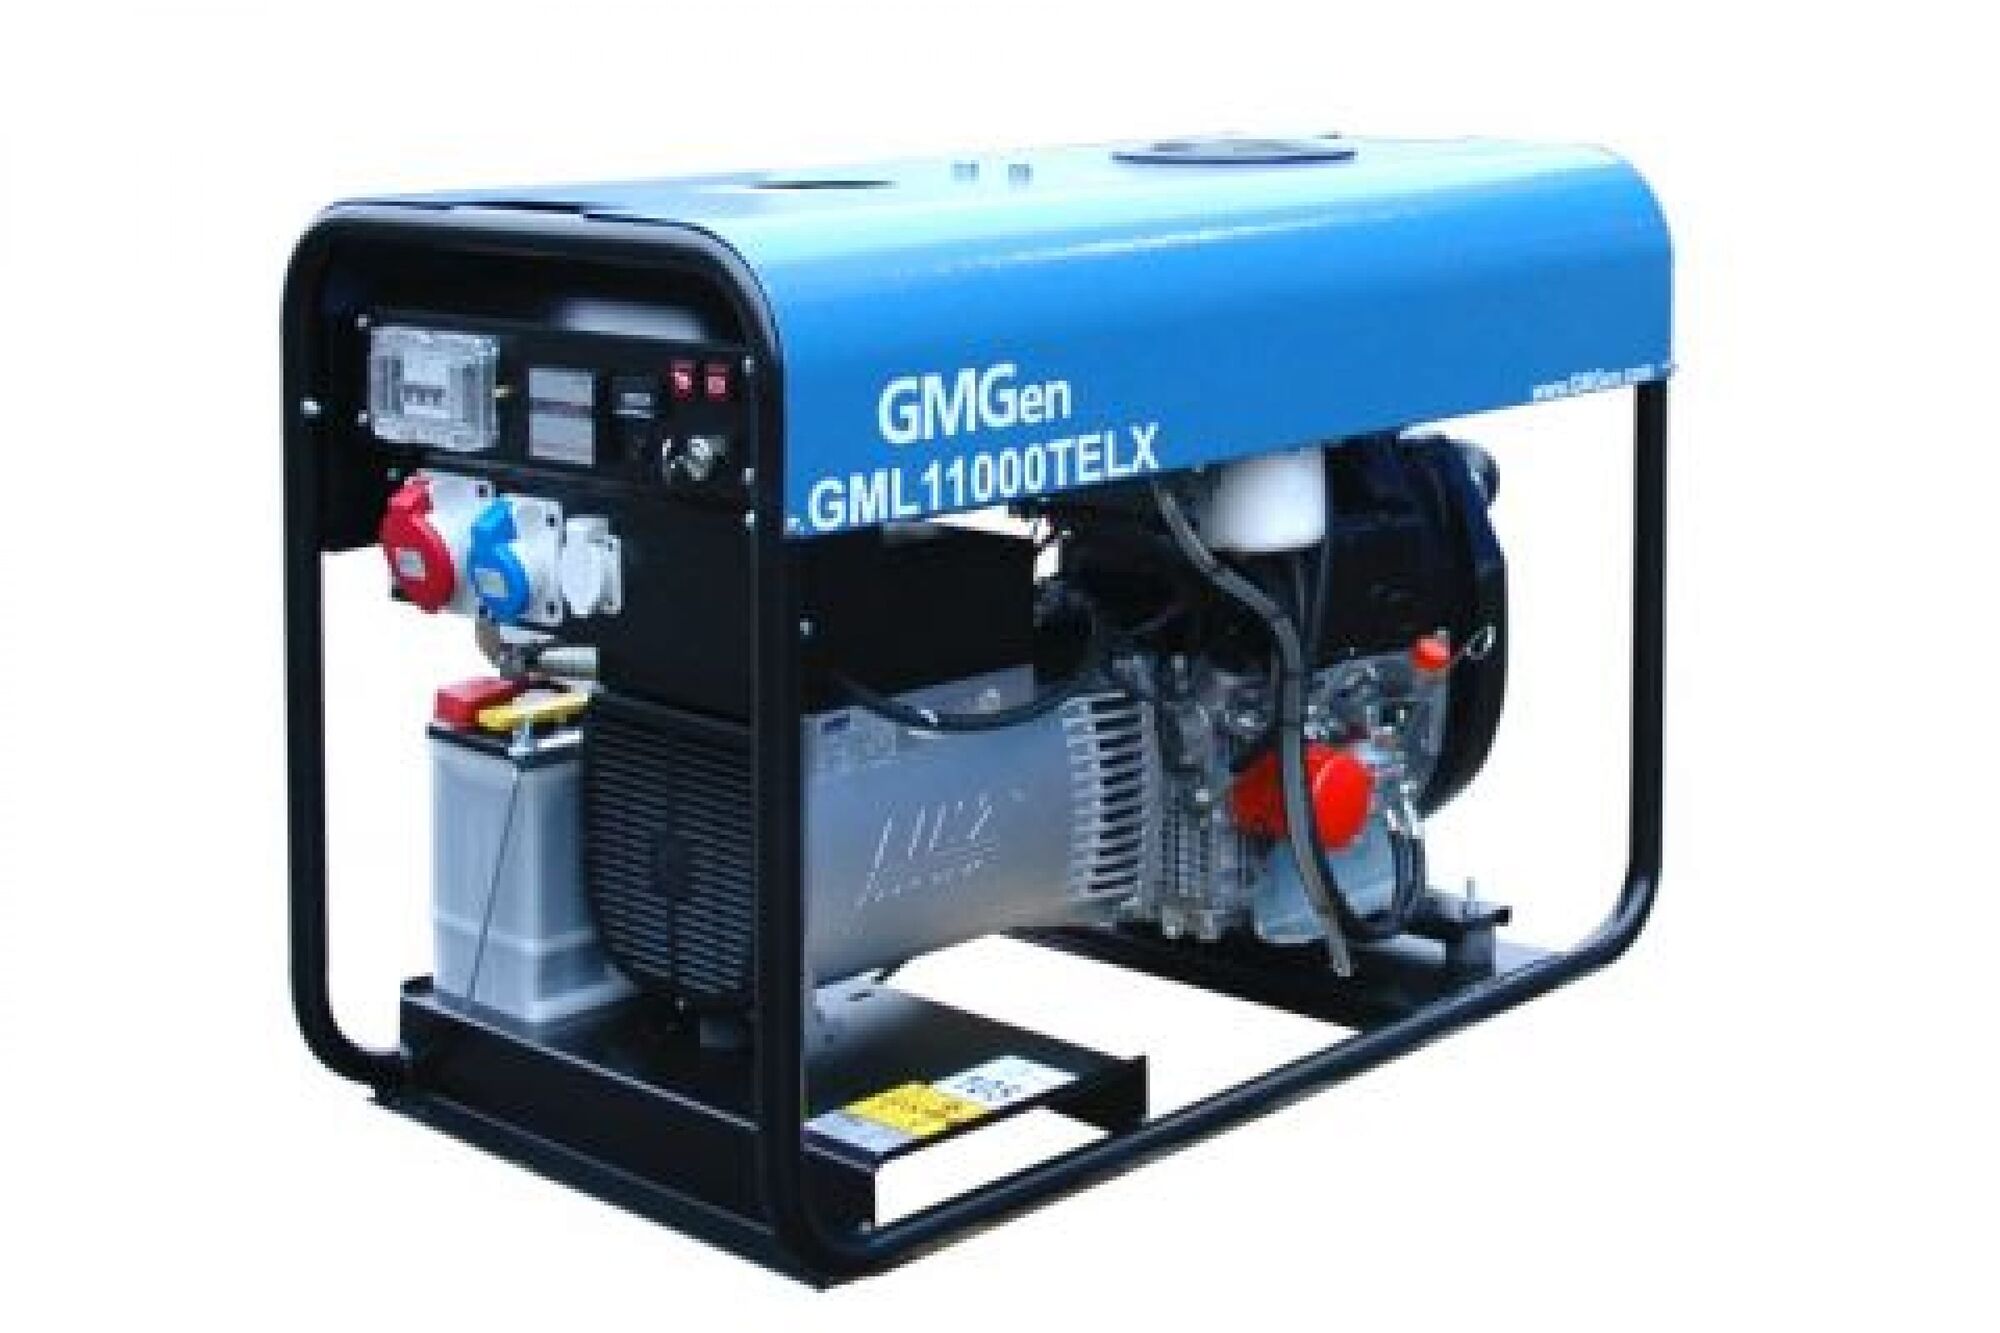 Дизель генератор GMGen Power Systems GML11000TELX 8.0 кВт, 380/220 В 501854